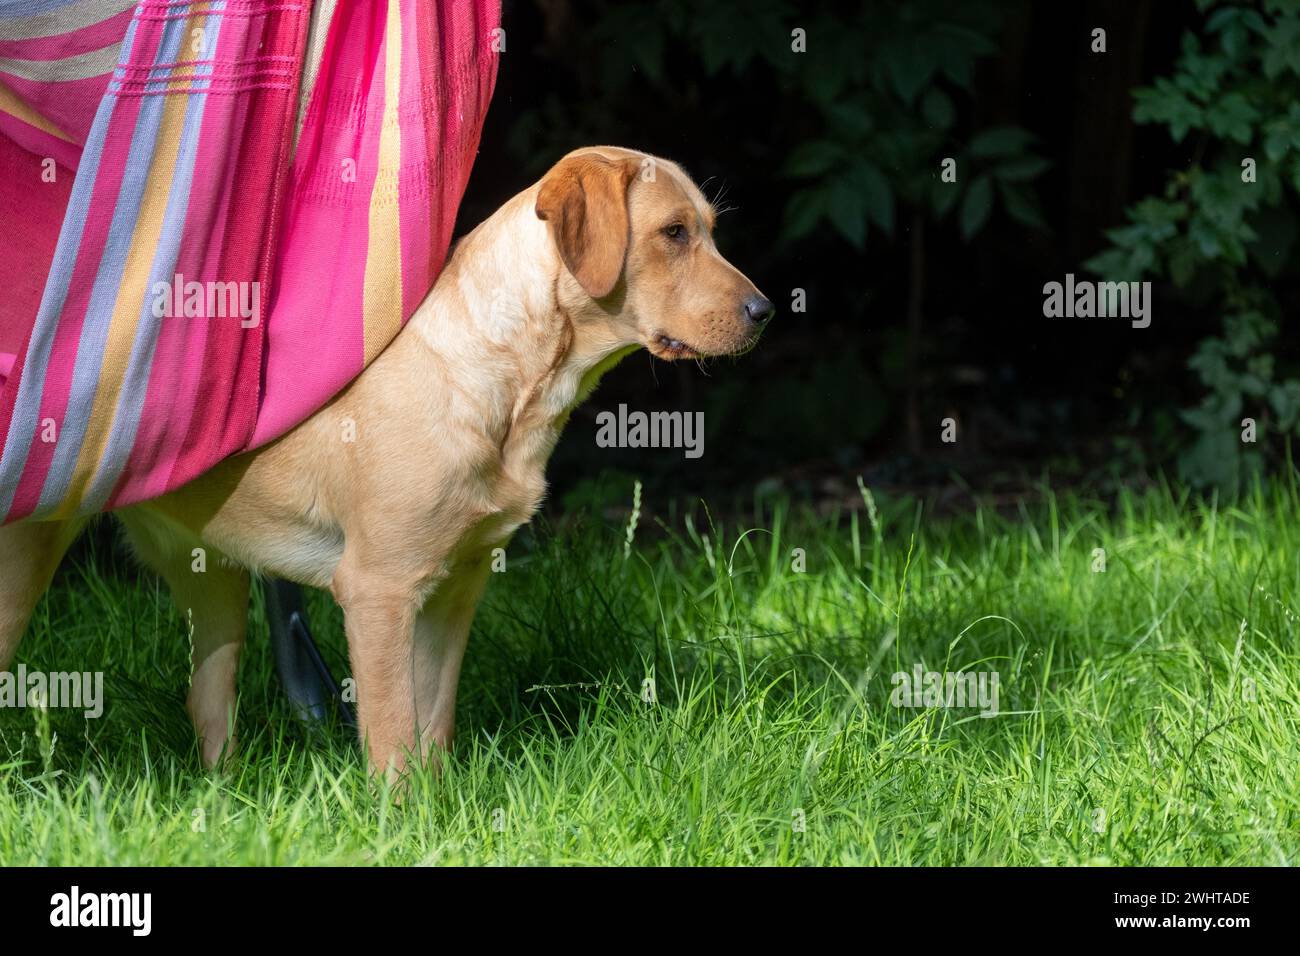 Rilassanti giornate estive: Labrador giallo e amaca colorata nel giardino Foto Stock